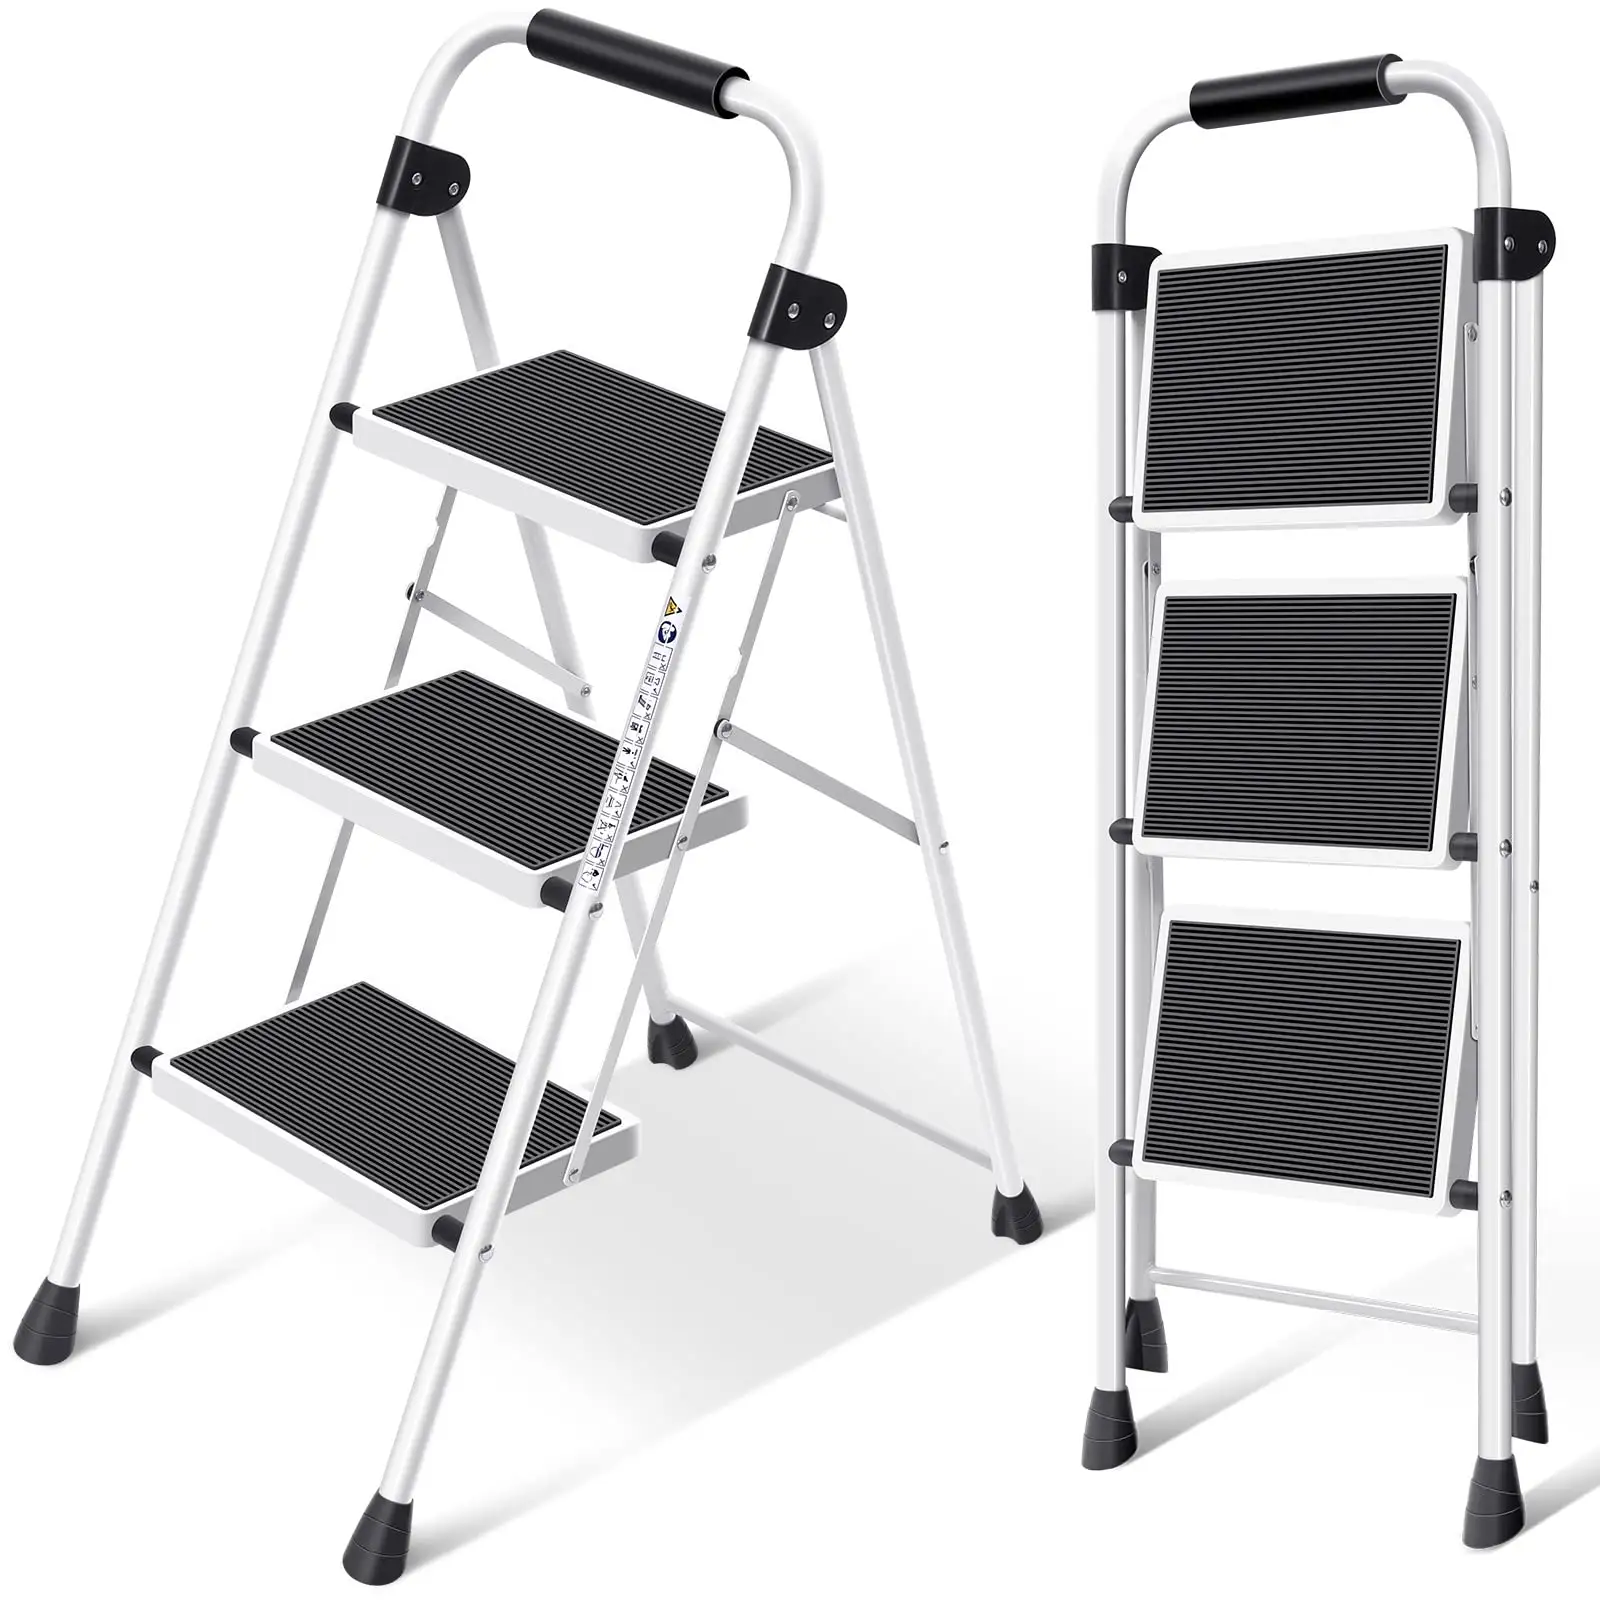 Platform Walmart çelik portatif merdiven katlanabilir boyama merdiveni ile taşınabilir 3 adım ayarlanabilir katlanır merdiven merdiven